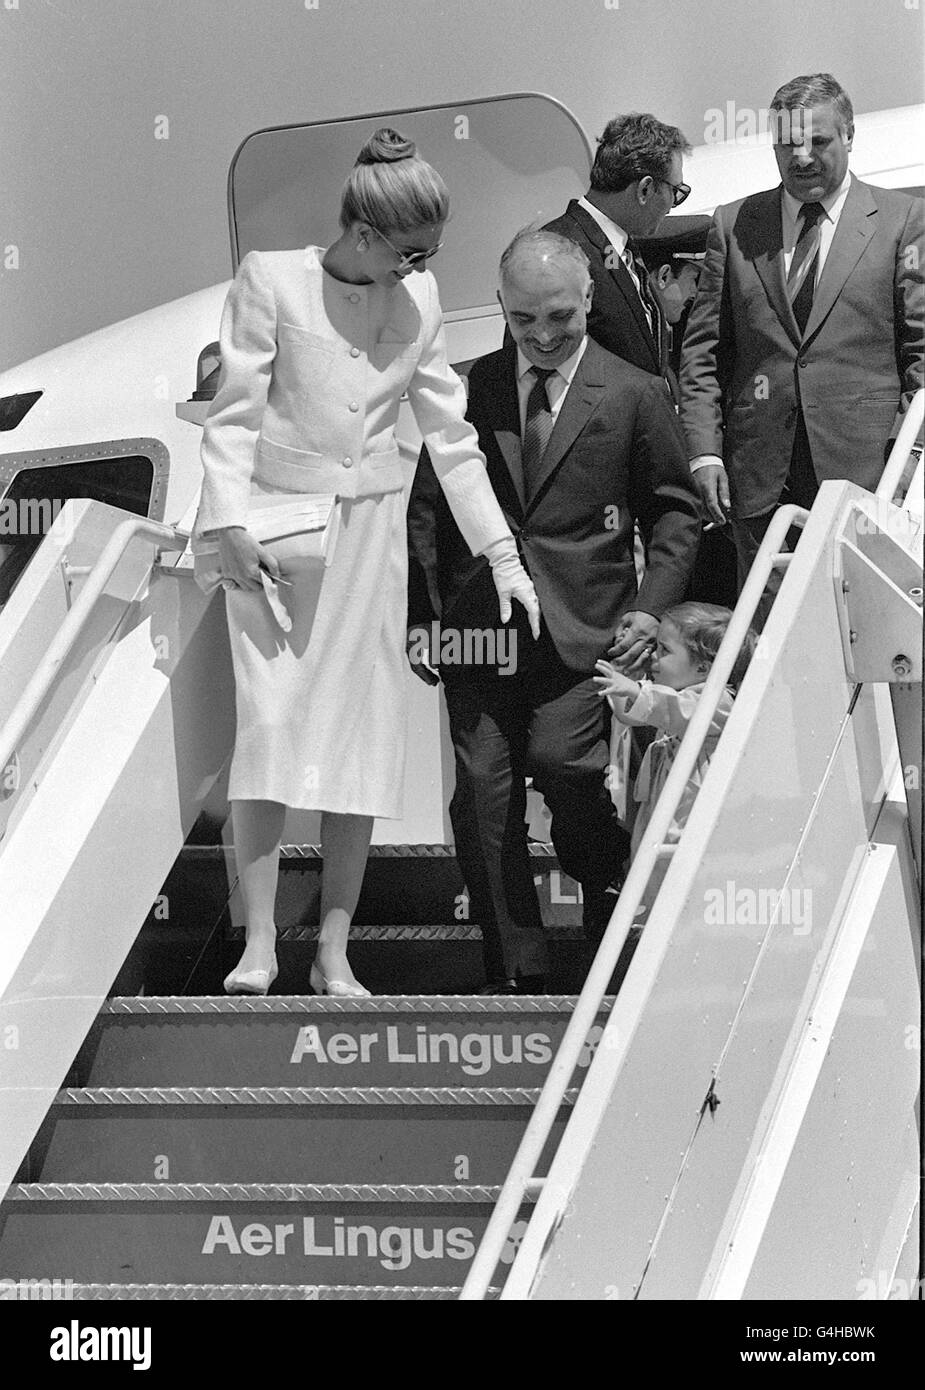 Le roi Hussein de Jordanie, sa femme la reine Noor et leur fille de deux ans la princesse Iman, descendent les marches de l'avion à leur arrivée à l'aéroport d'Heathrow, après avoir coupé court leur voyage en Amérique.Le roi était à Londres pour poursuivre les tests médicaux.* Un porte-parole nie les rapports d'un complot de coup d'État.*5/2/99: Le roi Hussein gravement malade doit arriver en Jordanie après une greffe de moelle osseuse infructueuse dans un hôpital américain. Banque D'Images